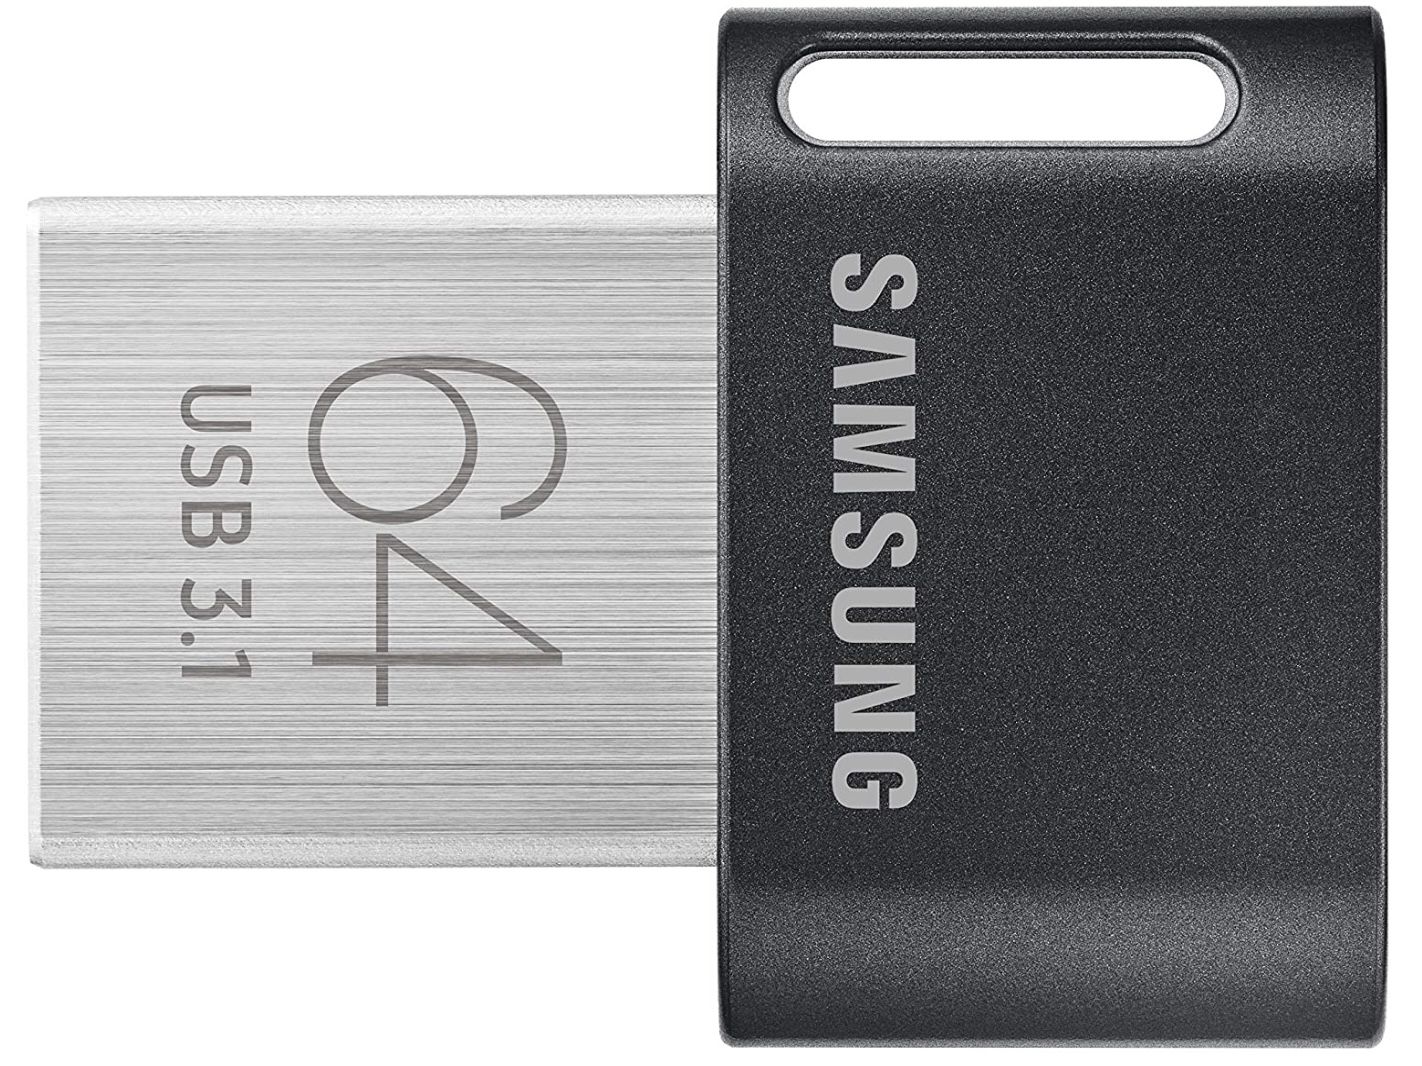 Samsung FIT Plus 64GB Typ A 300 MB/s USB 3.1 Flash Drive für 10,99€ (statt 14€)